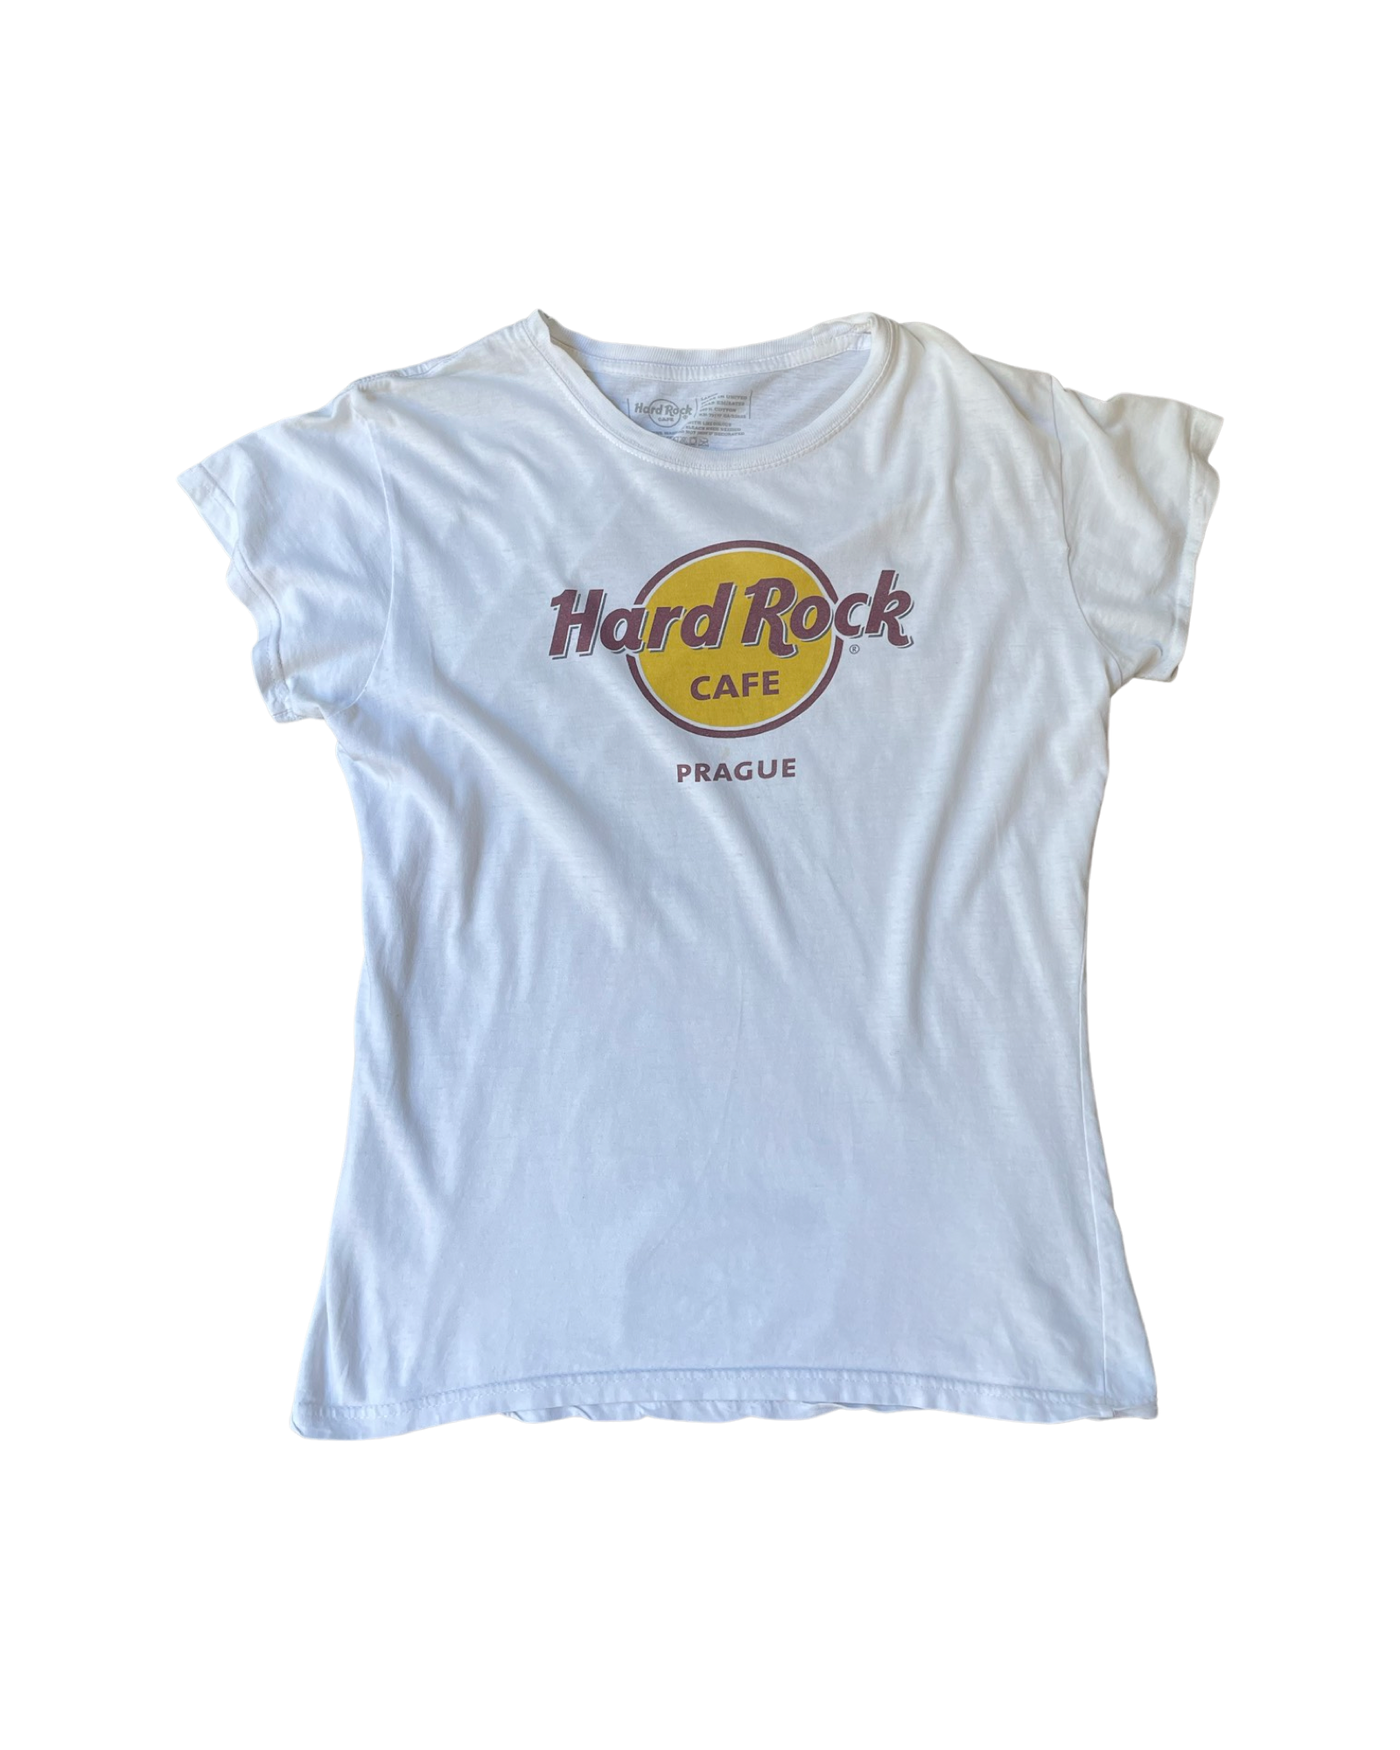 Vintage Hard Rock Cafe T-Shirt Size L